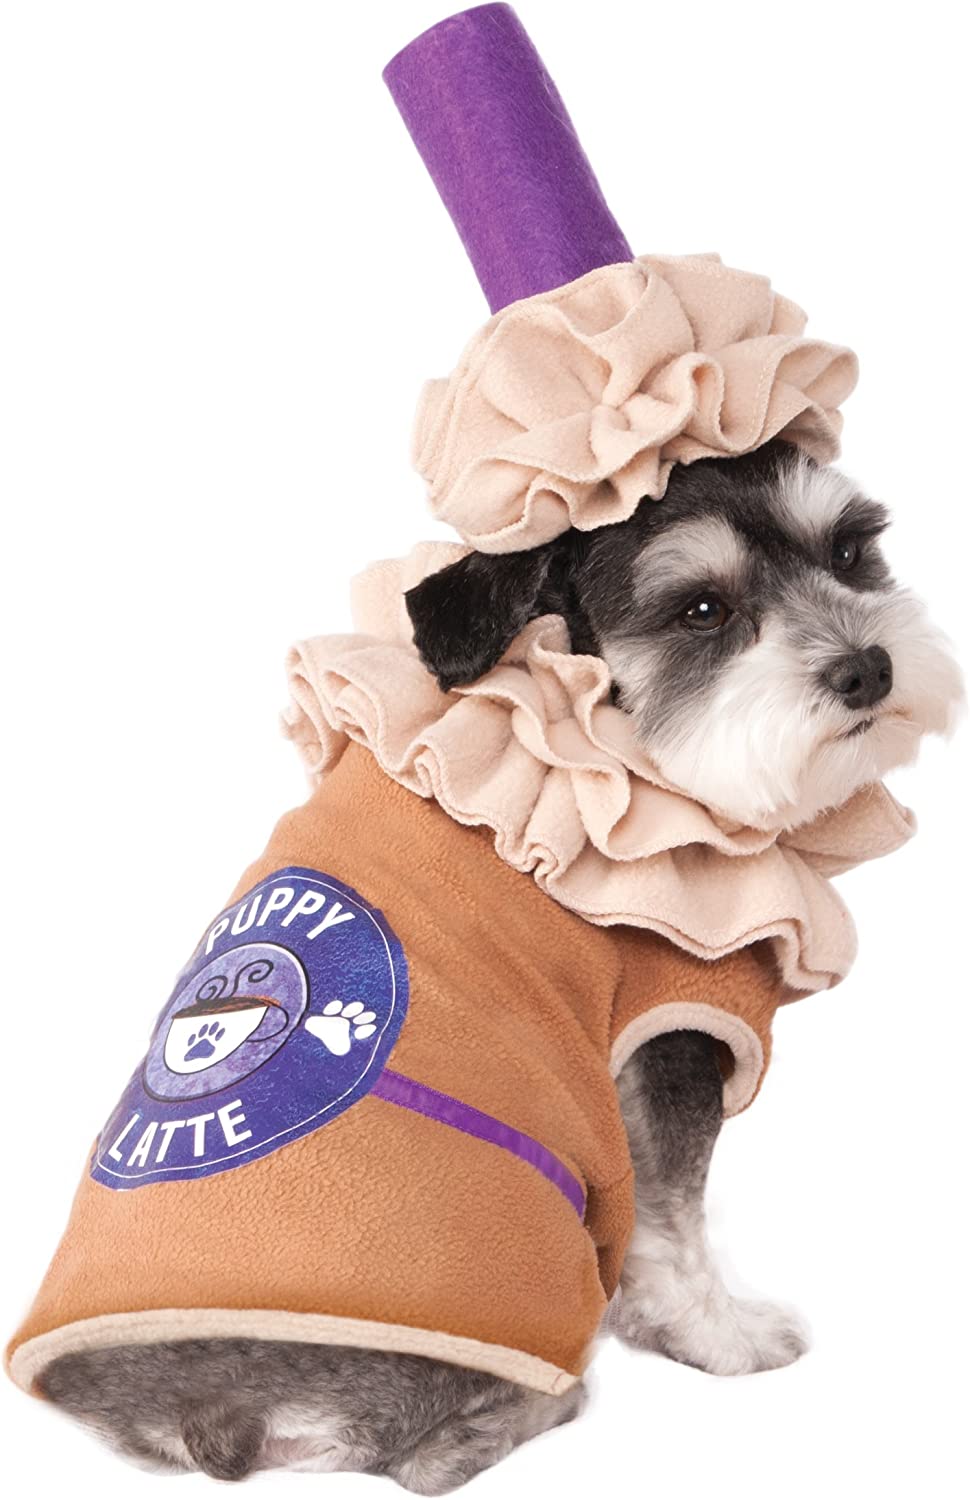 Latte Pet Costume- pettoyus